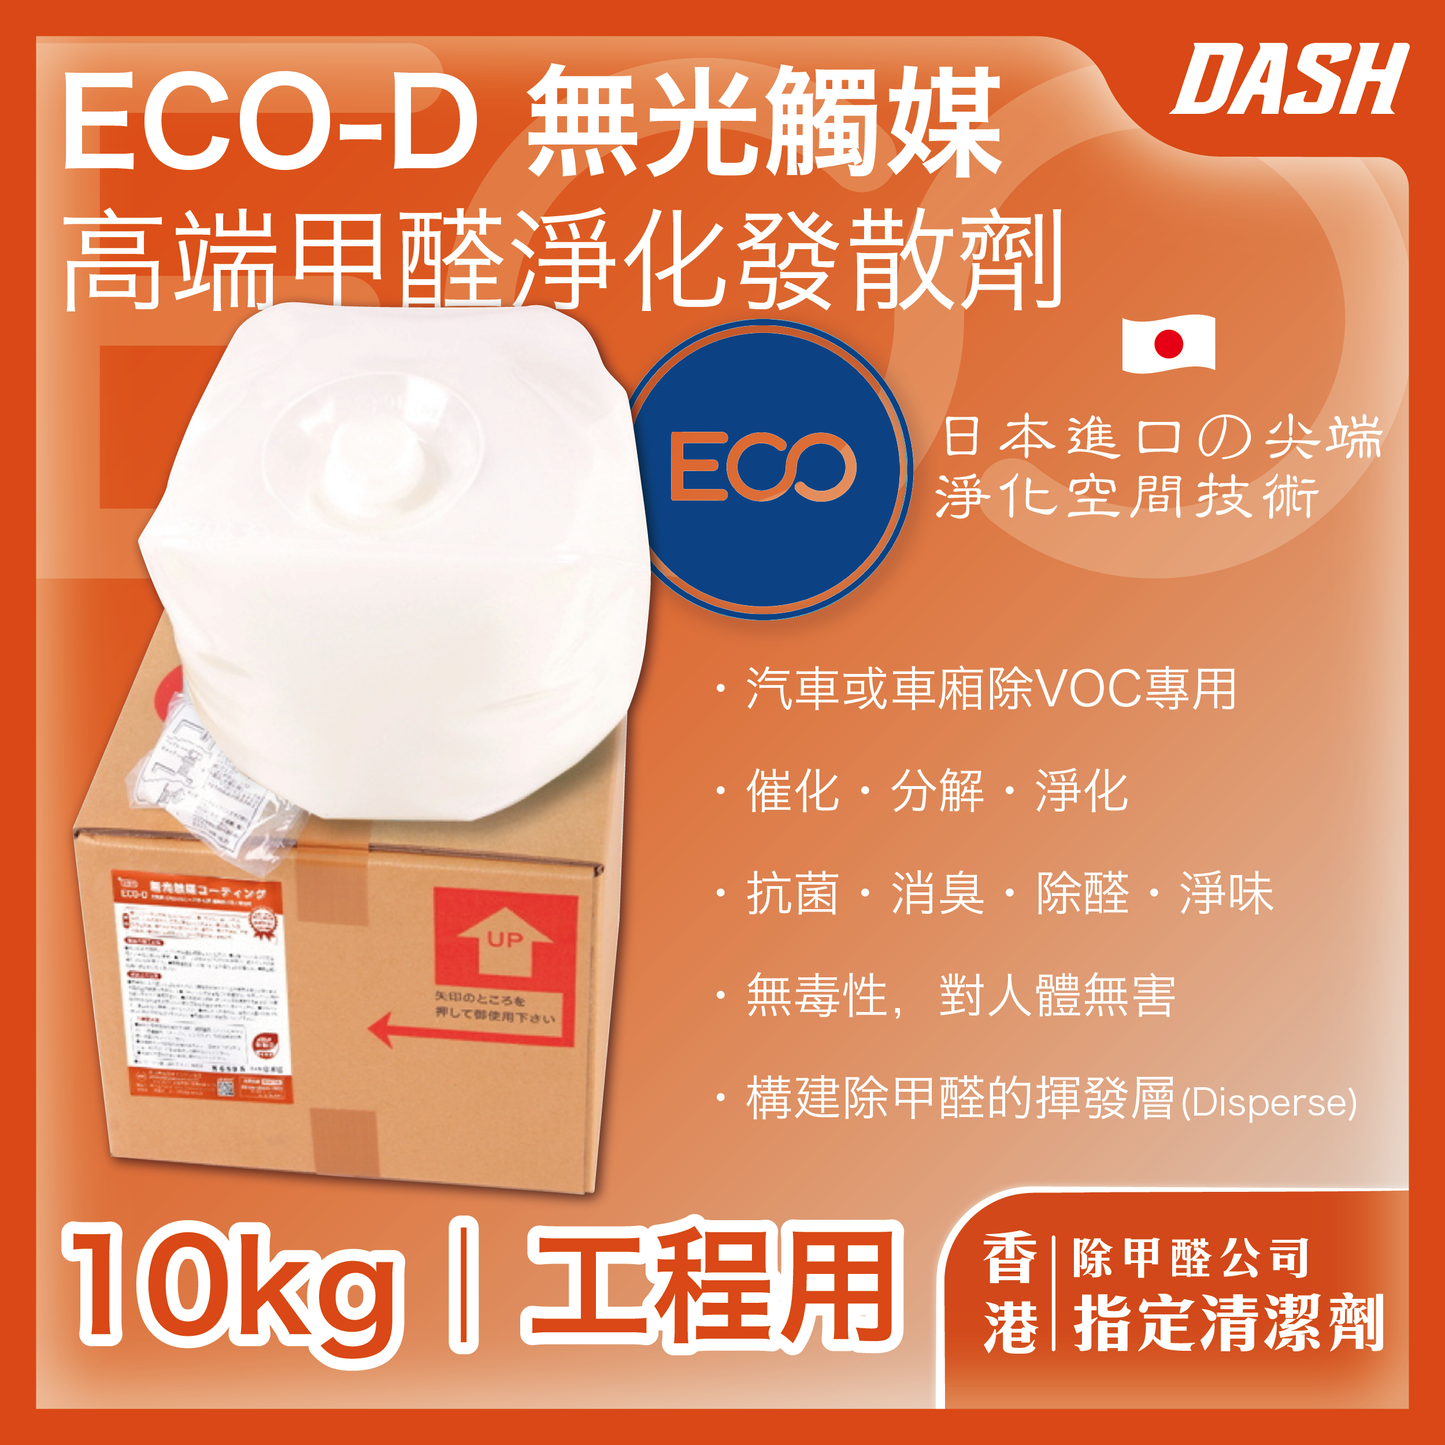 DASH ECO-D 日本無光觸媒 甲醛發散劑 (10kg 工程適用) 甲醛清除劑 強力型淨化噴霧劑